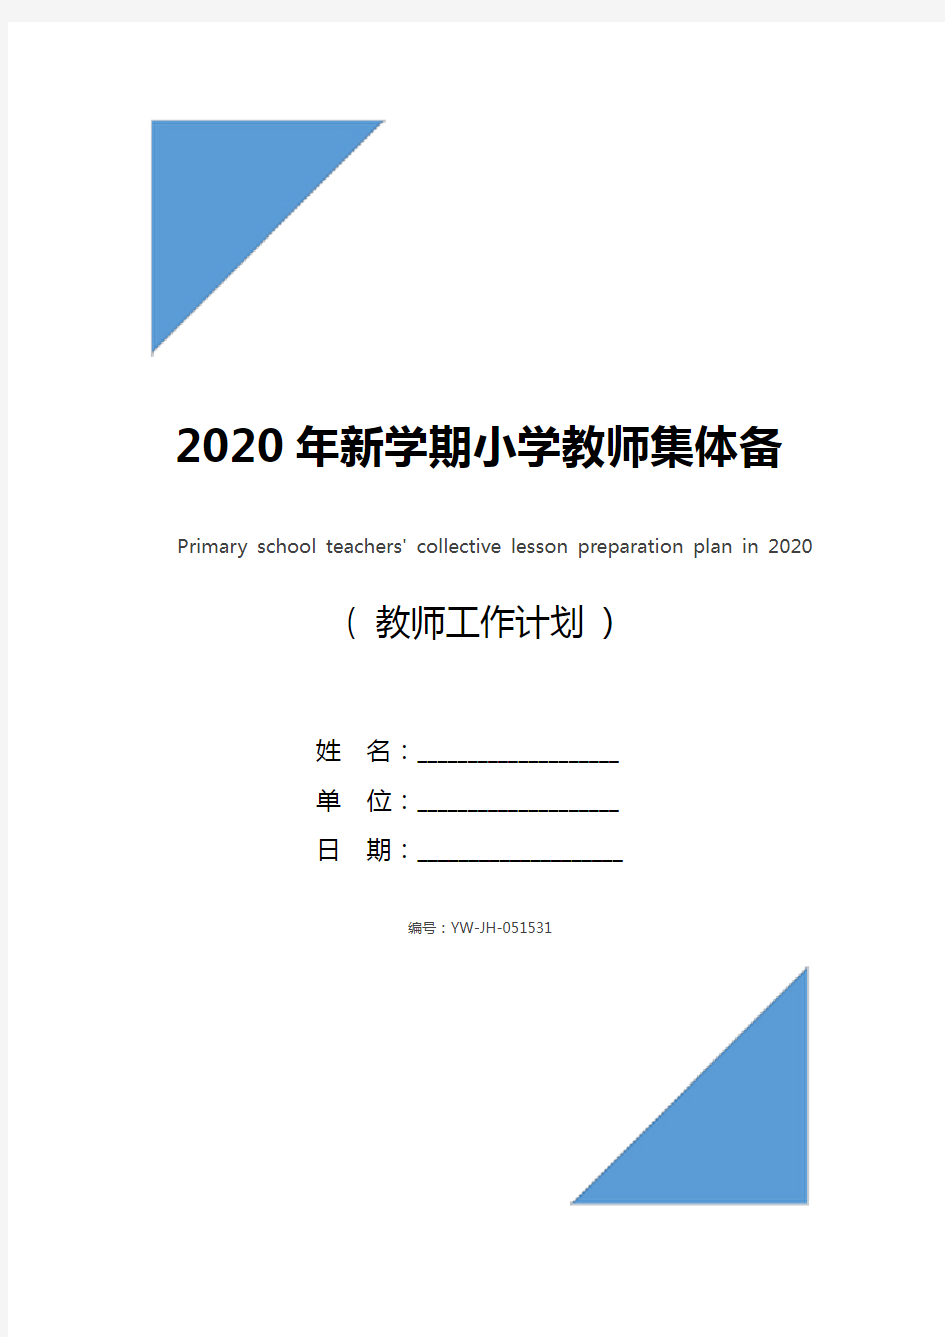 2020年新学期小学教师集体备课计划